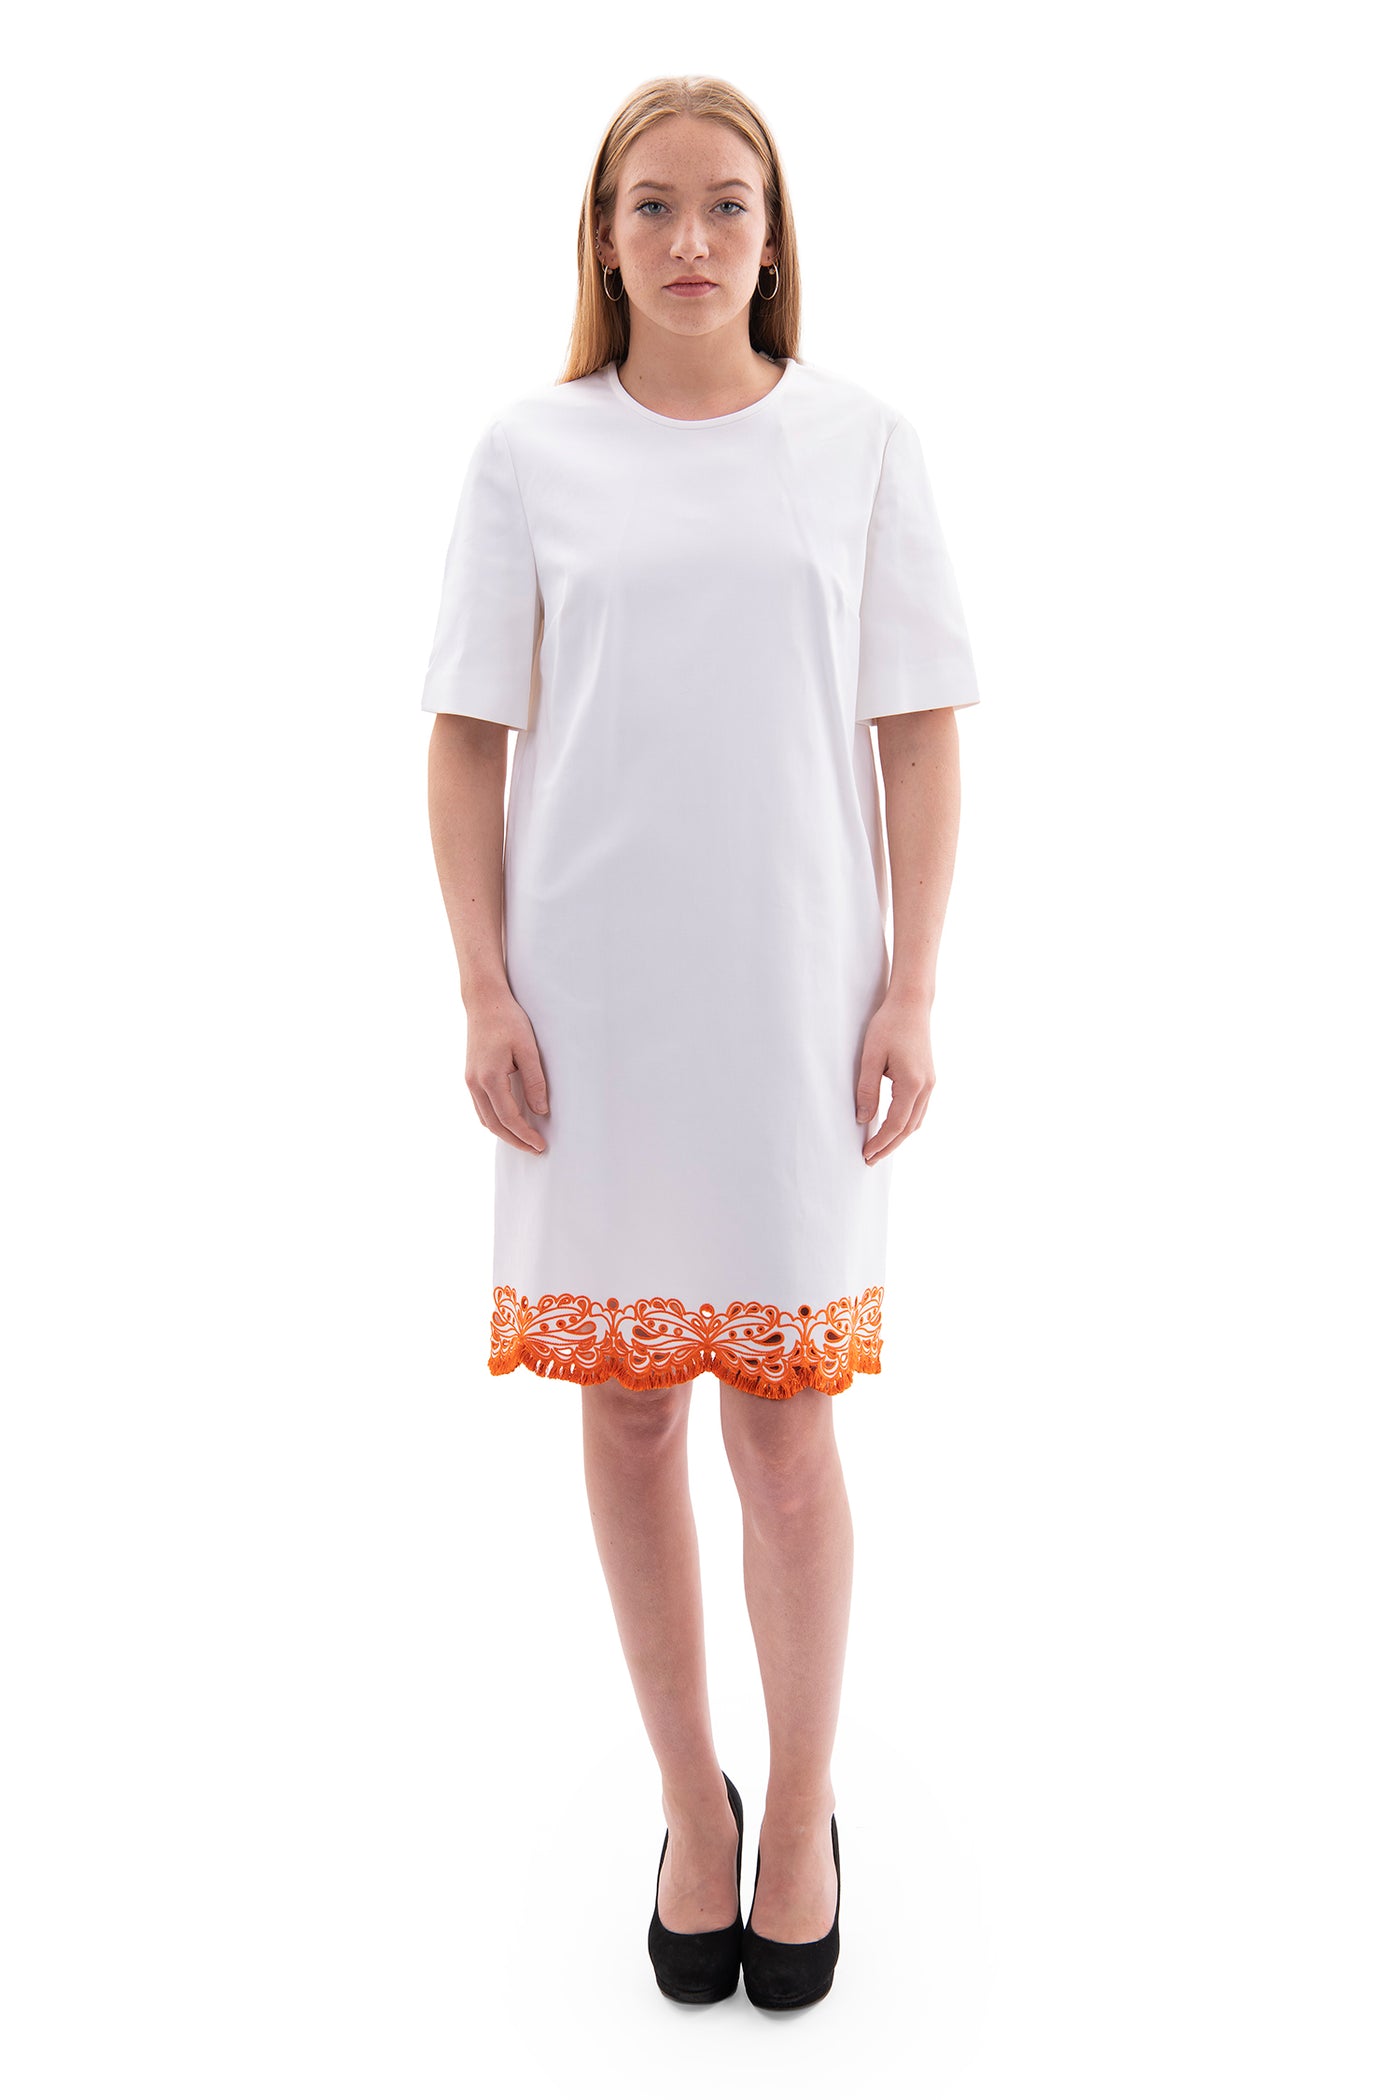 emilio pucci white shift dress with orange trim